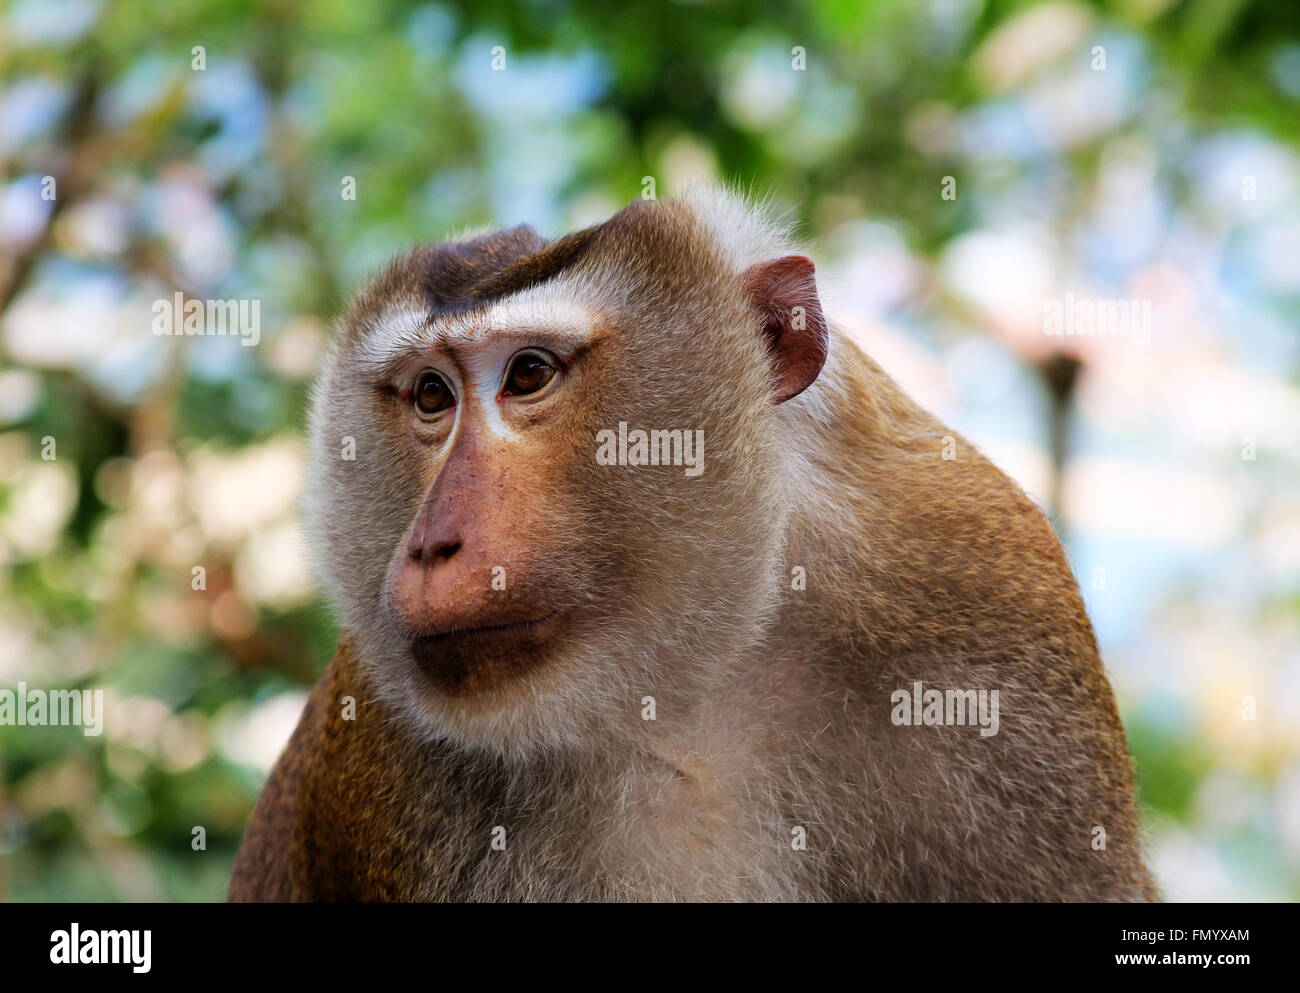 La faune sauvage monkey jungle face fond vert en Thaïlande Banque D'Images